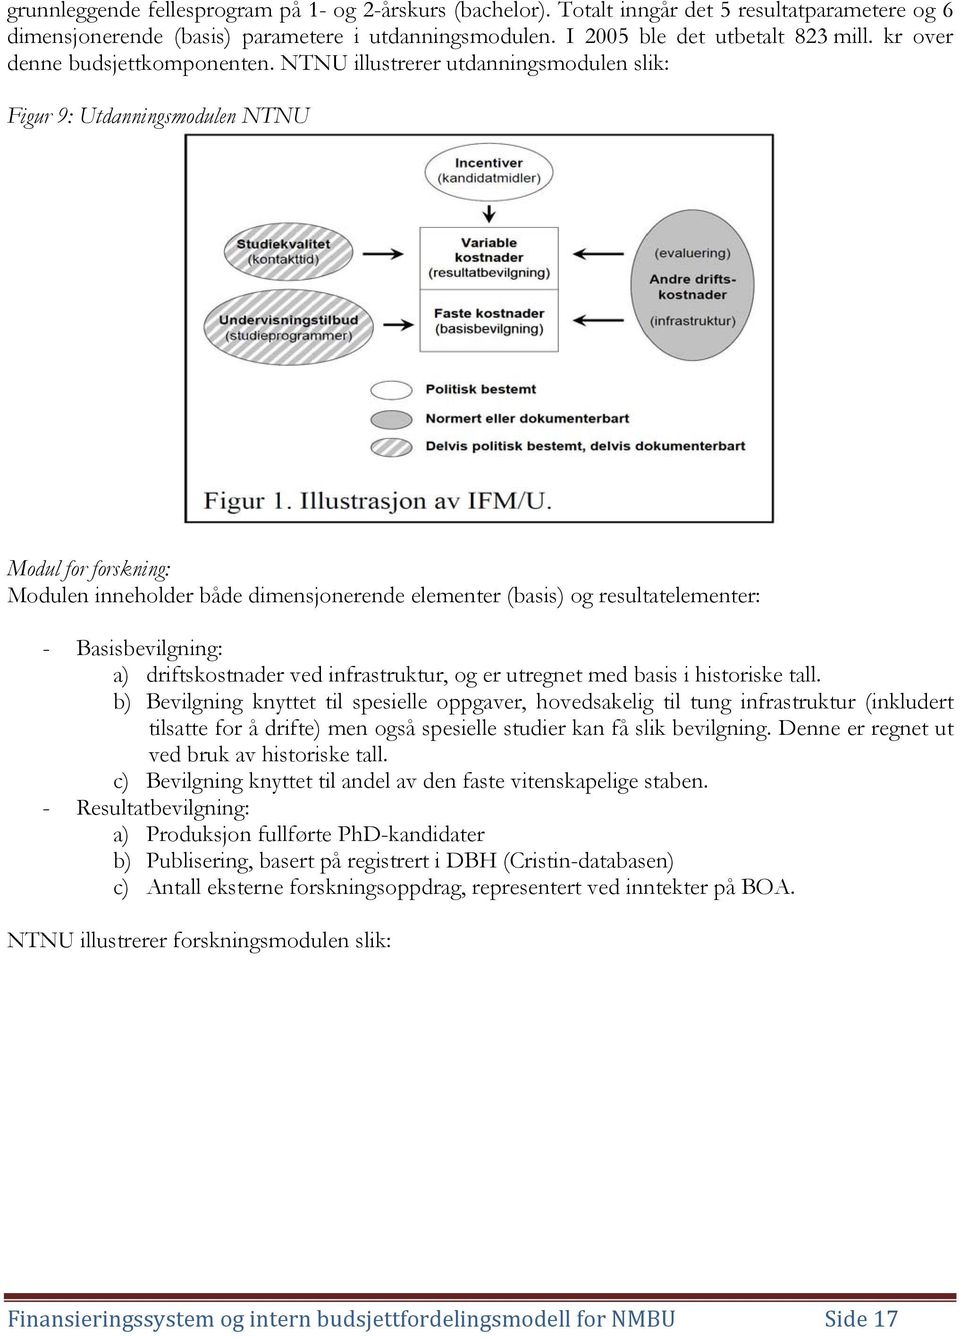 NTNU illustrerer utdanningsmodulen slik: Figur 9: Utdanningsmodulen NTNU Modul for forskning: Modulen inneholder både dimensjonerende elementer (basis) og resultatelementer: - Basisbevilgning: a)